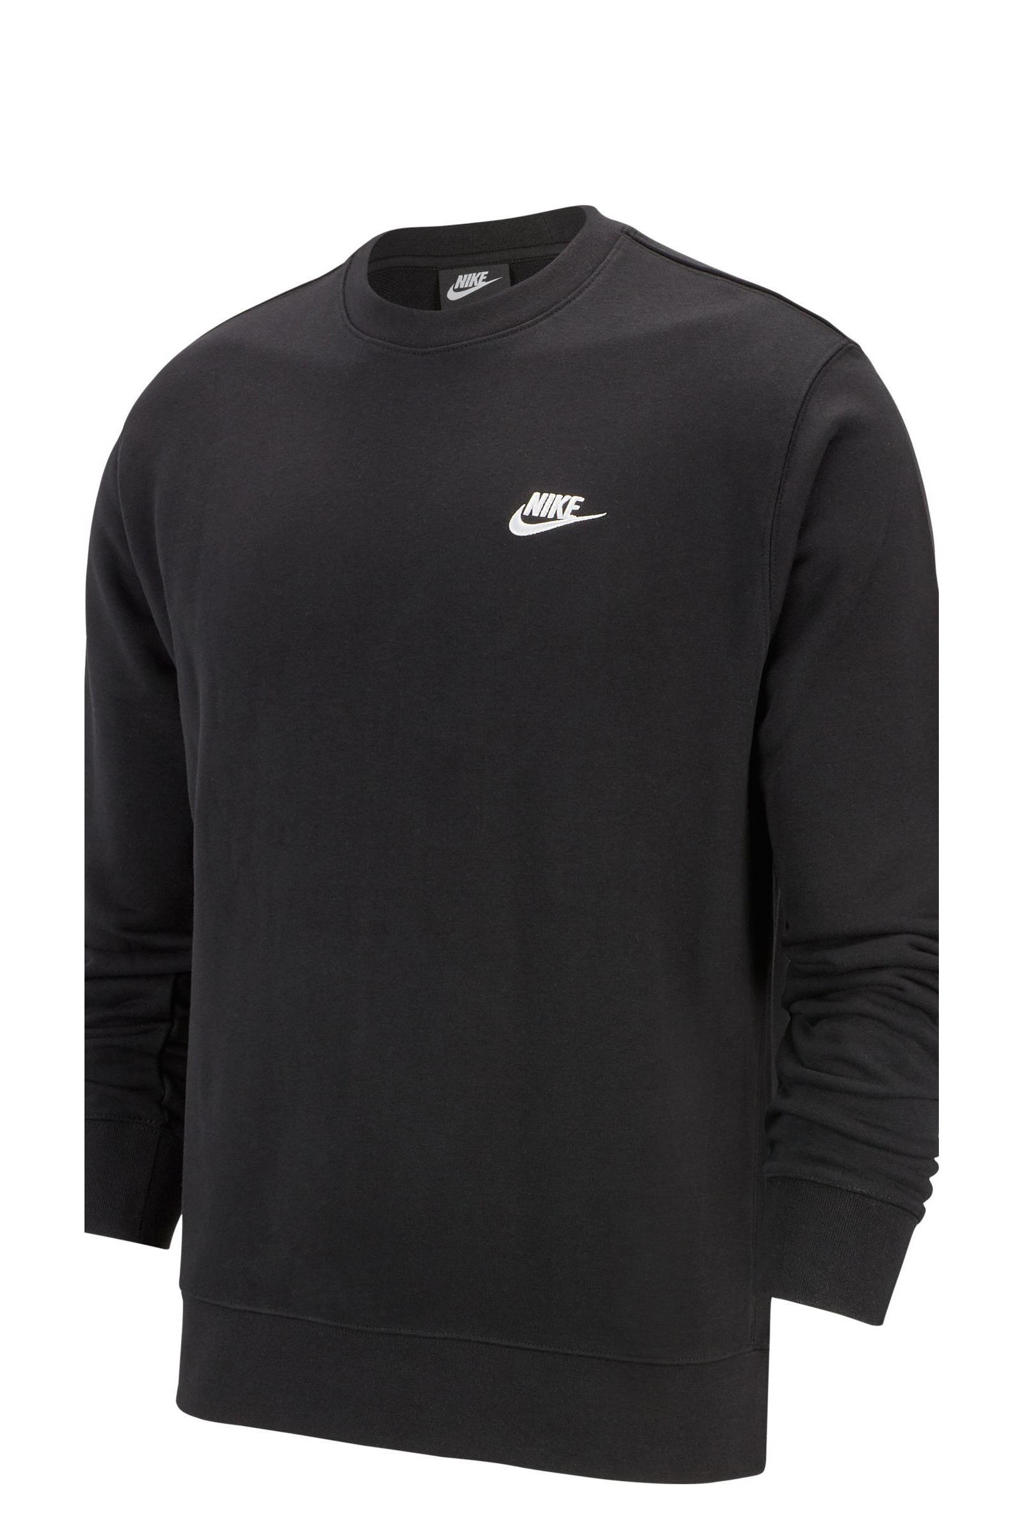 Zwarte heren Nike sweater van katoen met logo dessin, lange mouwen en ronde hals